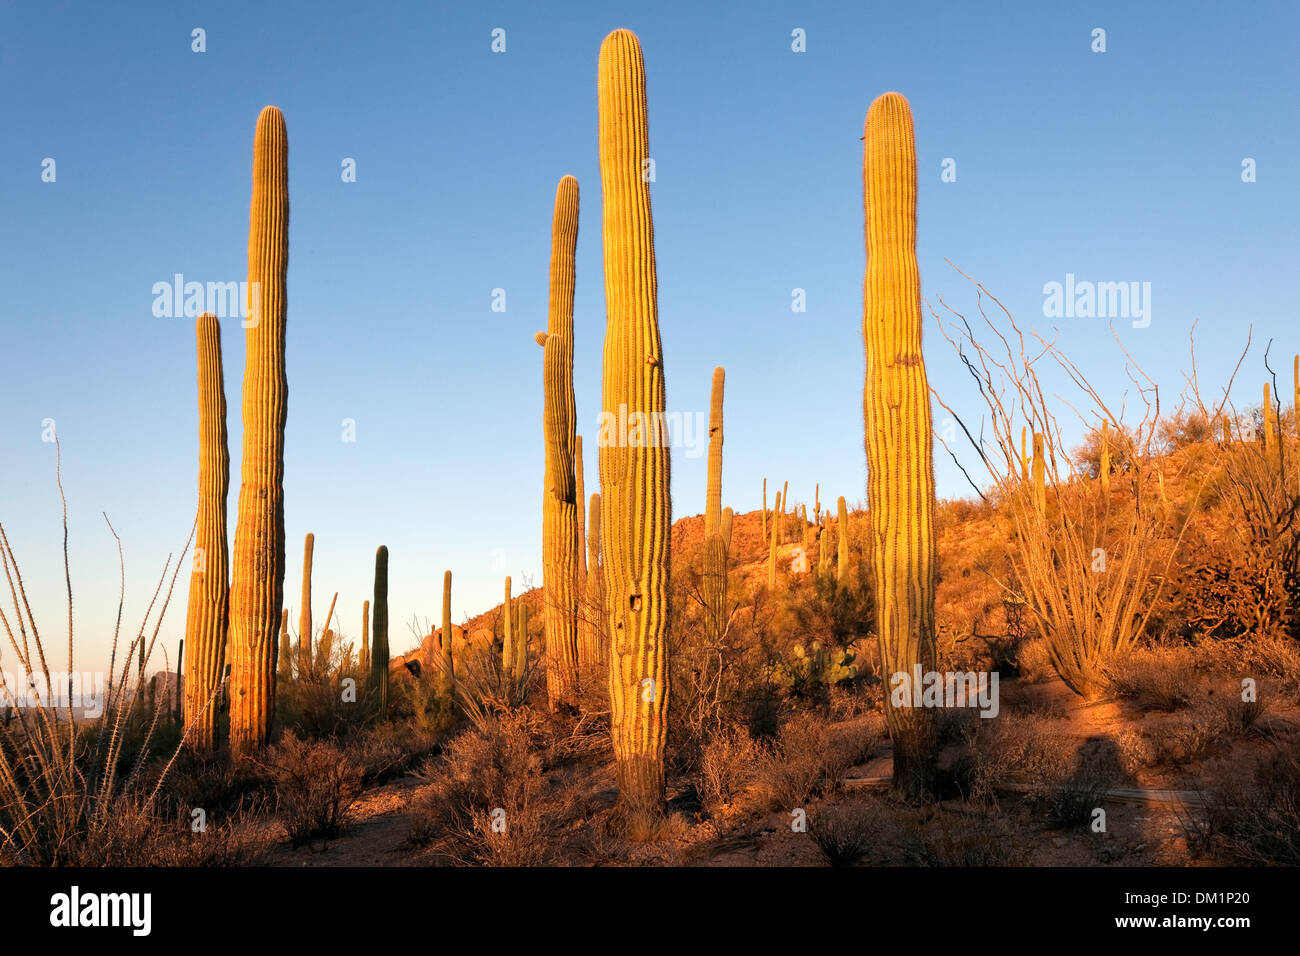 Cactus géant saguaro (Carnegiea gigantea), la fin de l'après-midi, lumière Saguaro National Park, de l'unité ouest, Tucson, Arizona Banque D'Images